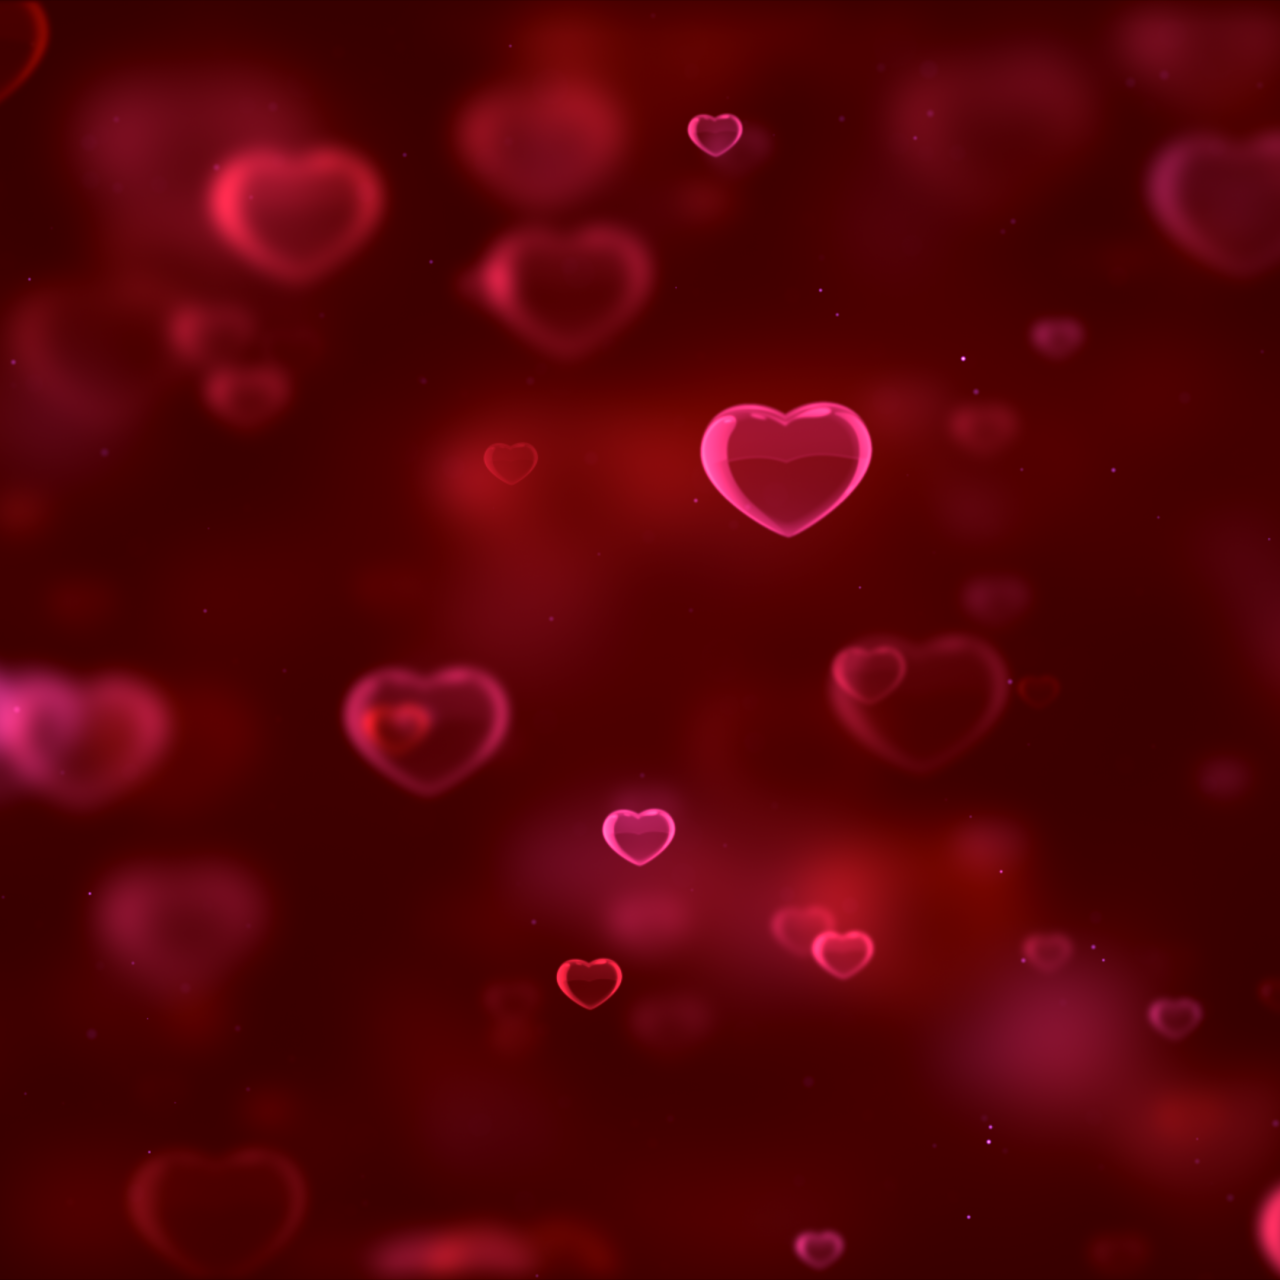 Lòng đỏ rực rỡ trên nền đen tuyệt đẹp, tạo thành hình nền 4K đẹp mắt cho điện thoại của bạn. Những trái tim này sẽ làm cho bạn cảm thấy tình yêu đang đến gần hơn, đem đến niềm vui và hạnh phúc cho cuộc sống của bạn. Tải ngay và cùng tận hưởng cảm giác đó.